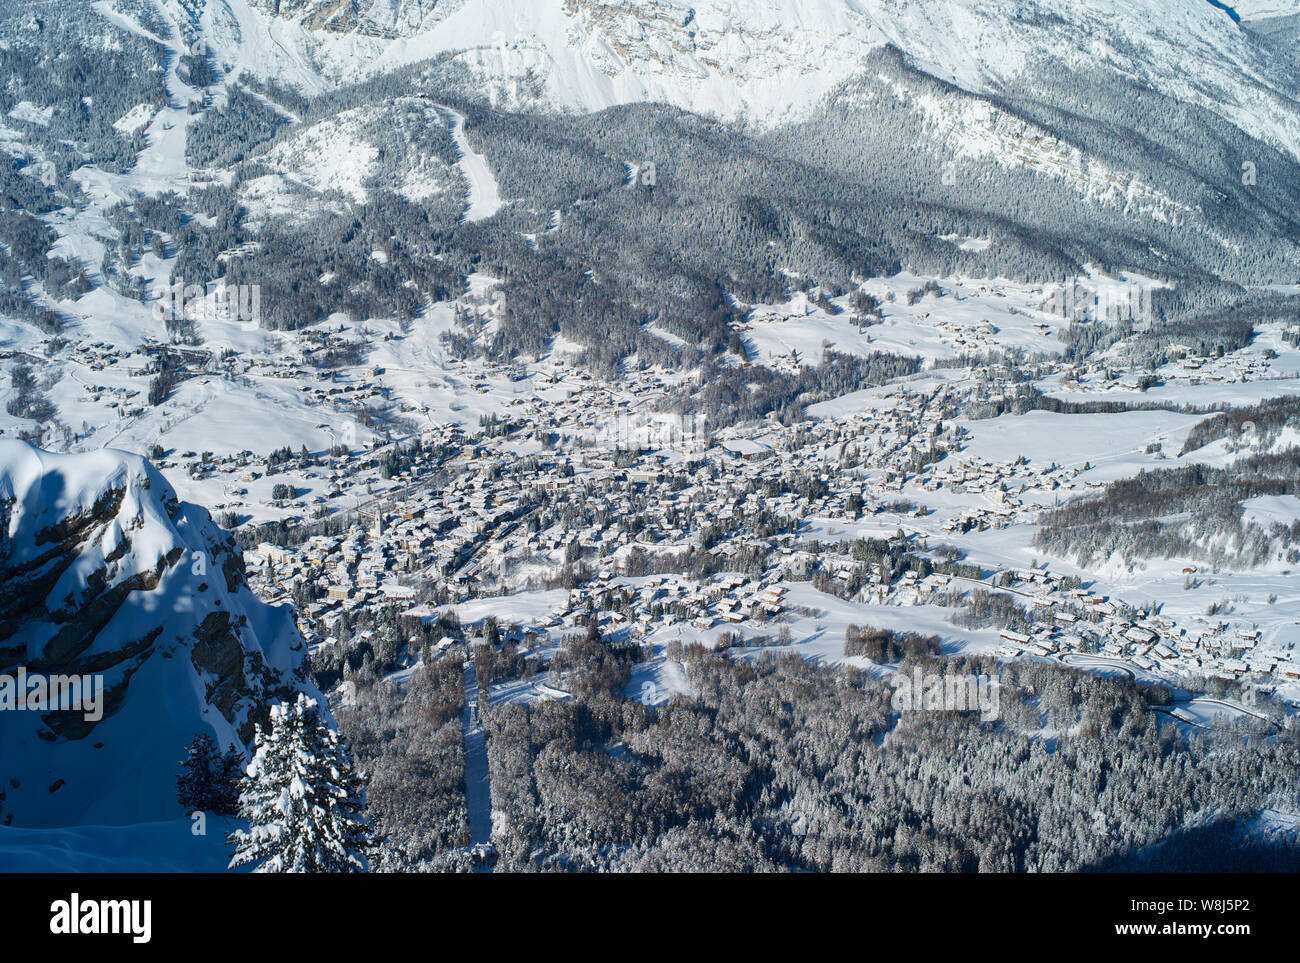 Das romantische, Verschneite Skigebiet von Cortina d Ampezzo in den italienischen Dolomiten von Faloria gesehen. Stockfoto